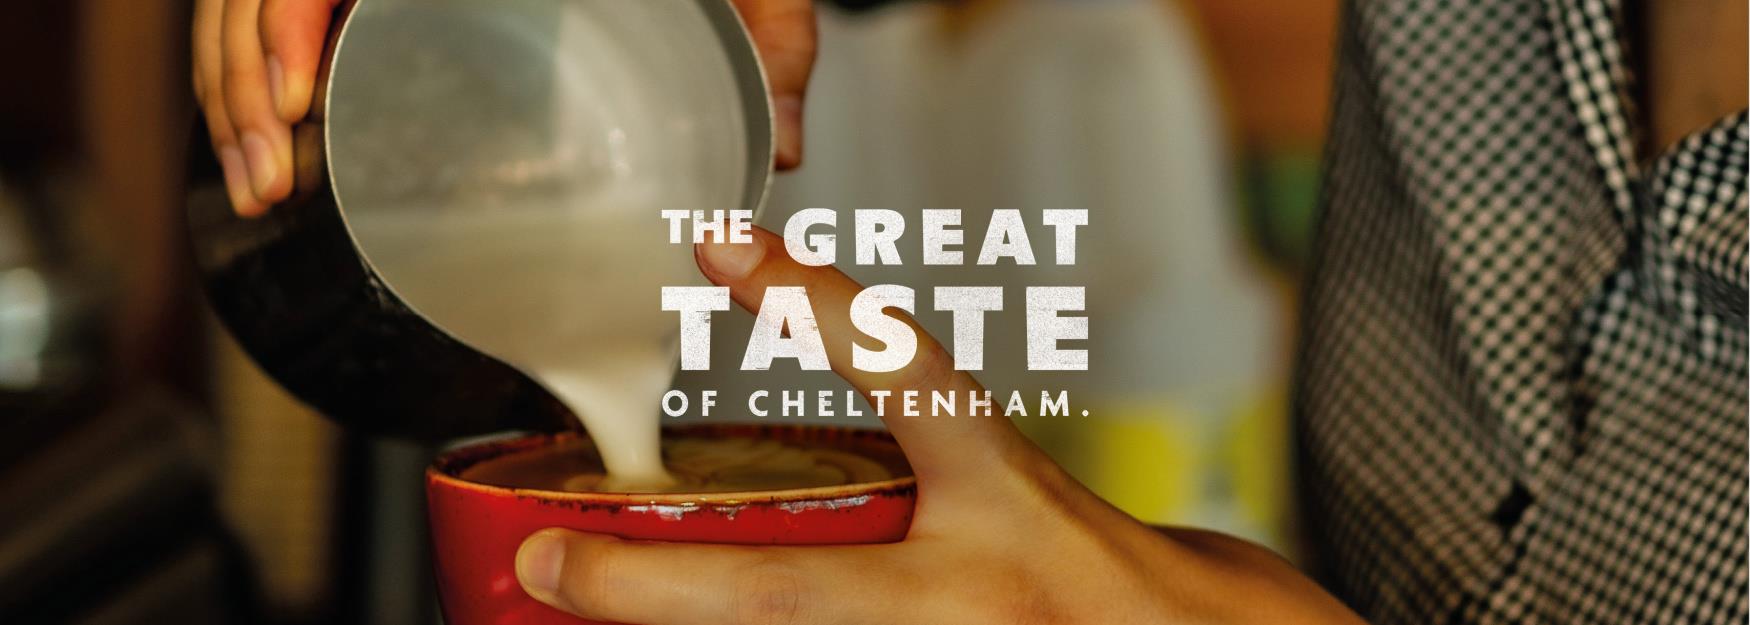 The Great Taste of Cheltenham campaign branding